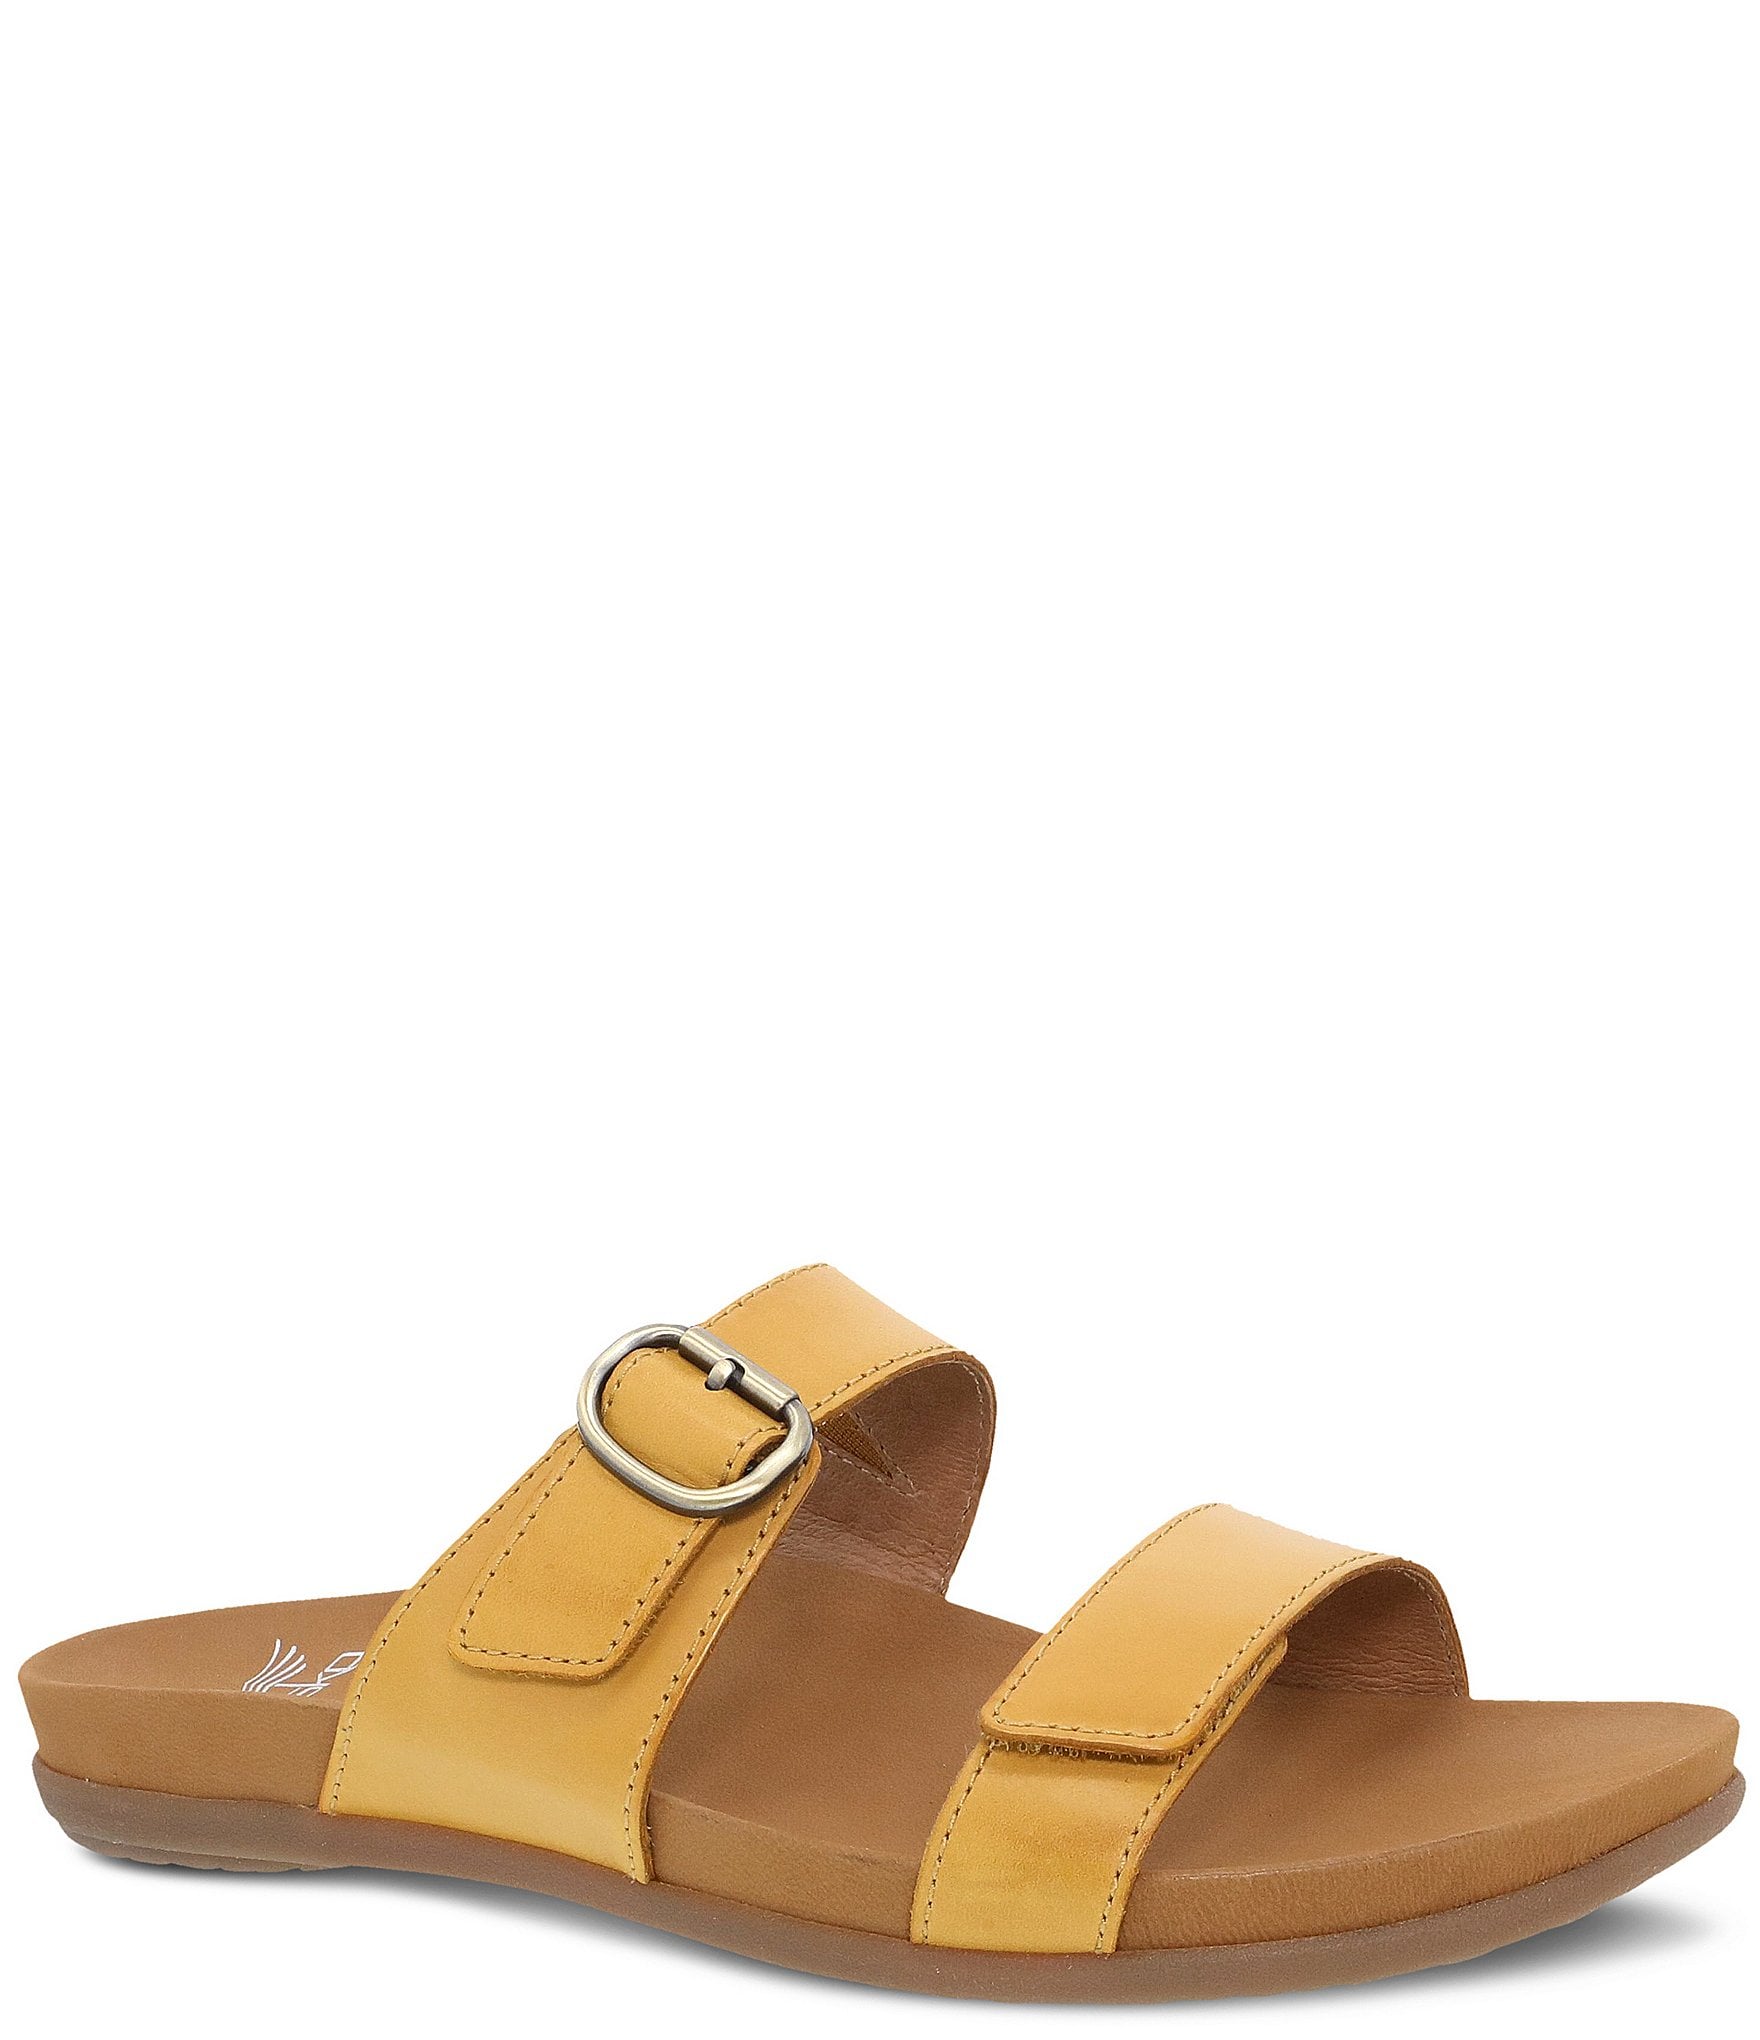 Women Slippers Open Toe Beach Sandals Shoes Non-Slip Slip On Slides Summers  Flat | eBay